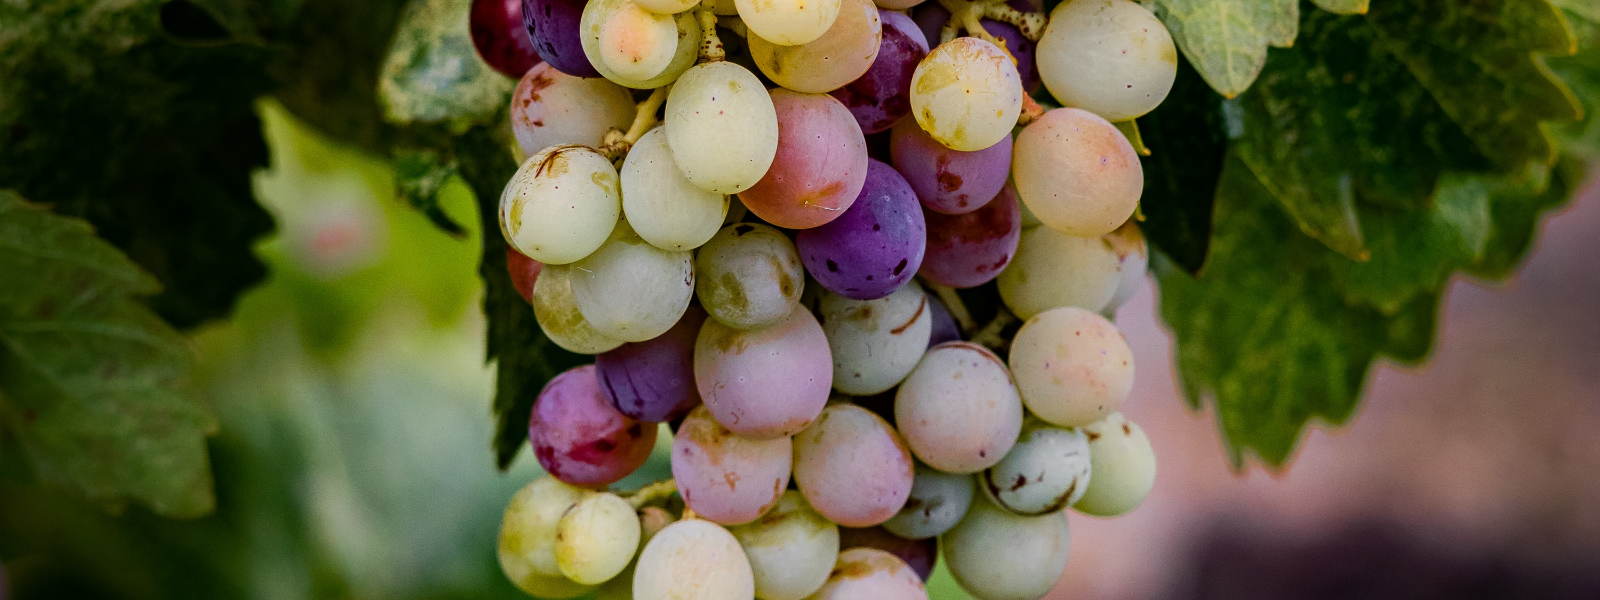 MULGIOTT OÜ - Tegeleme viinapuude hoolduse, nõustamise, viinapuu istikute müügi ja veinivalmistamise täislahenduste p...